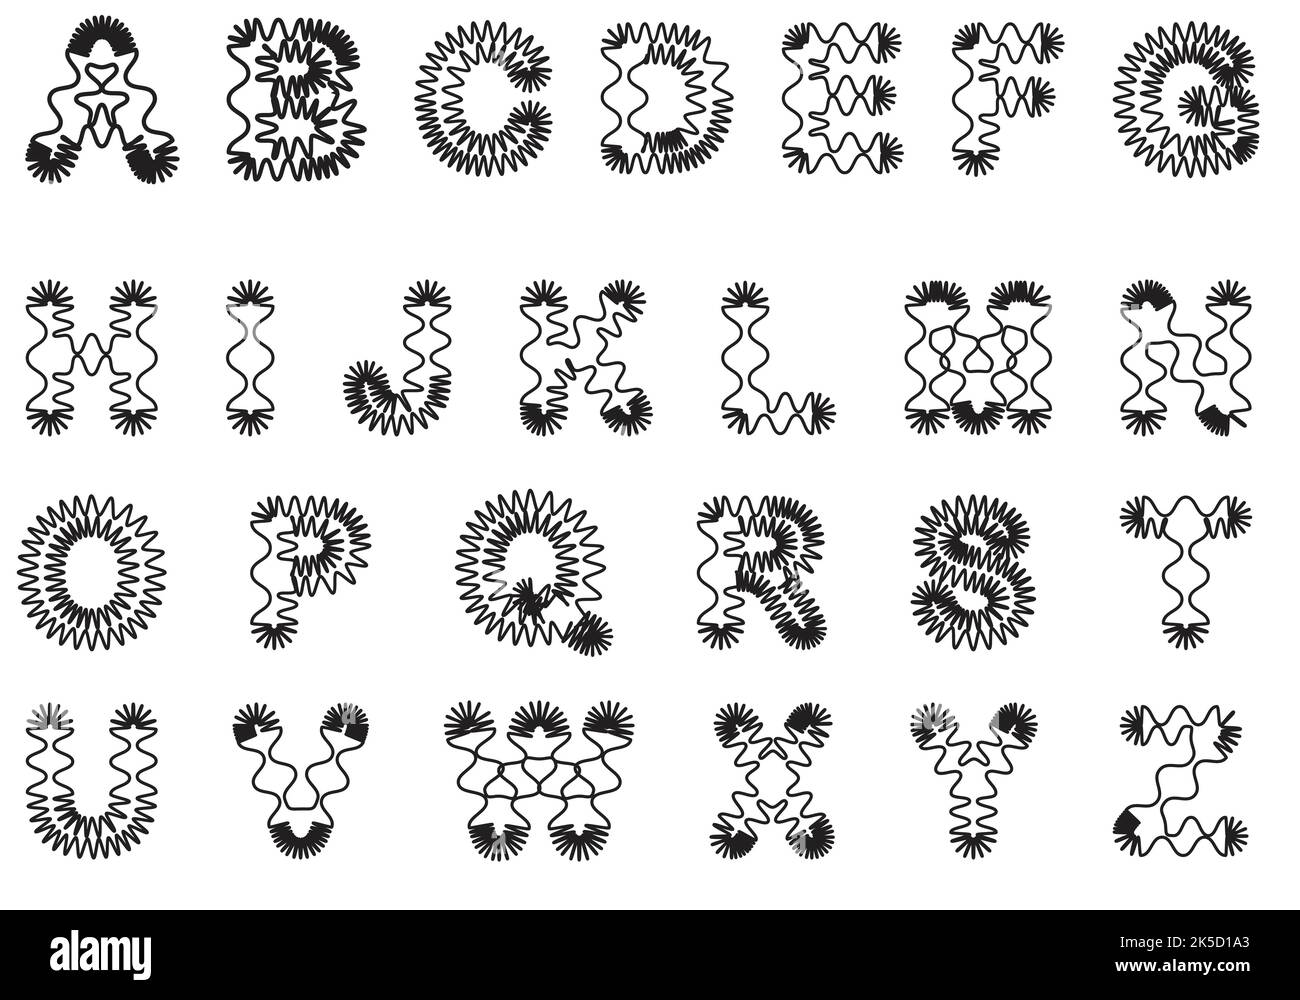 Großbuchstaben mit abgerundeten Ecken und animierten Streifen Stock Vektor